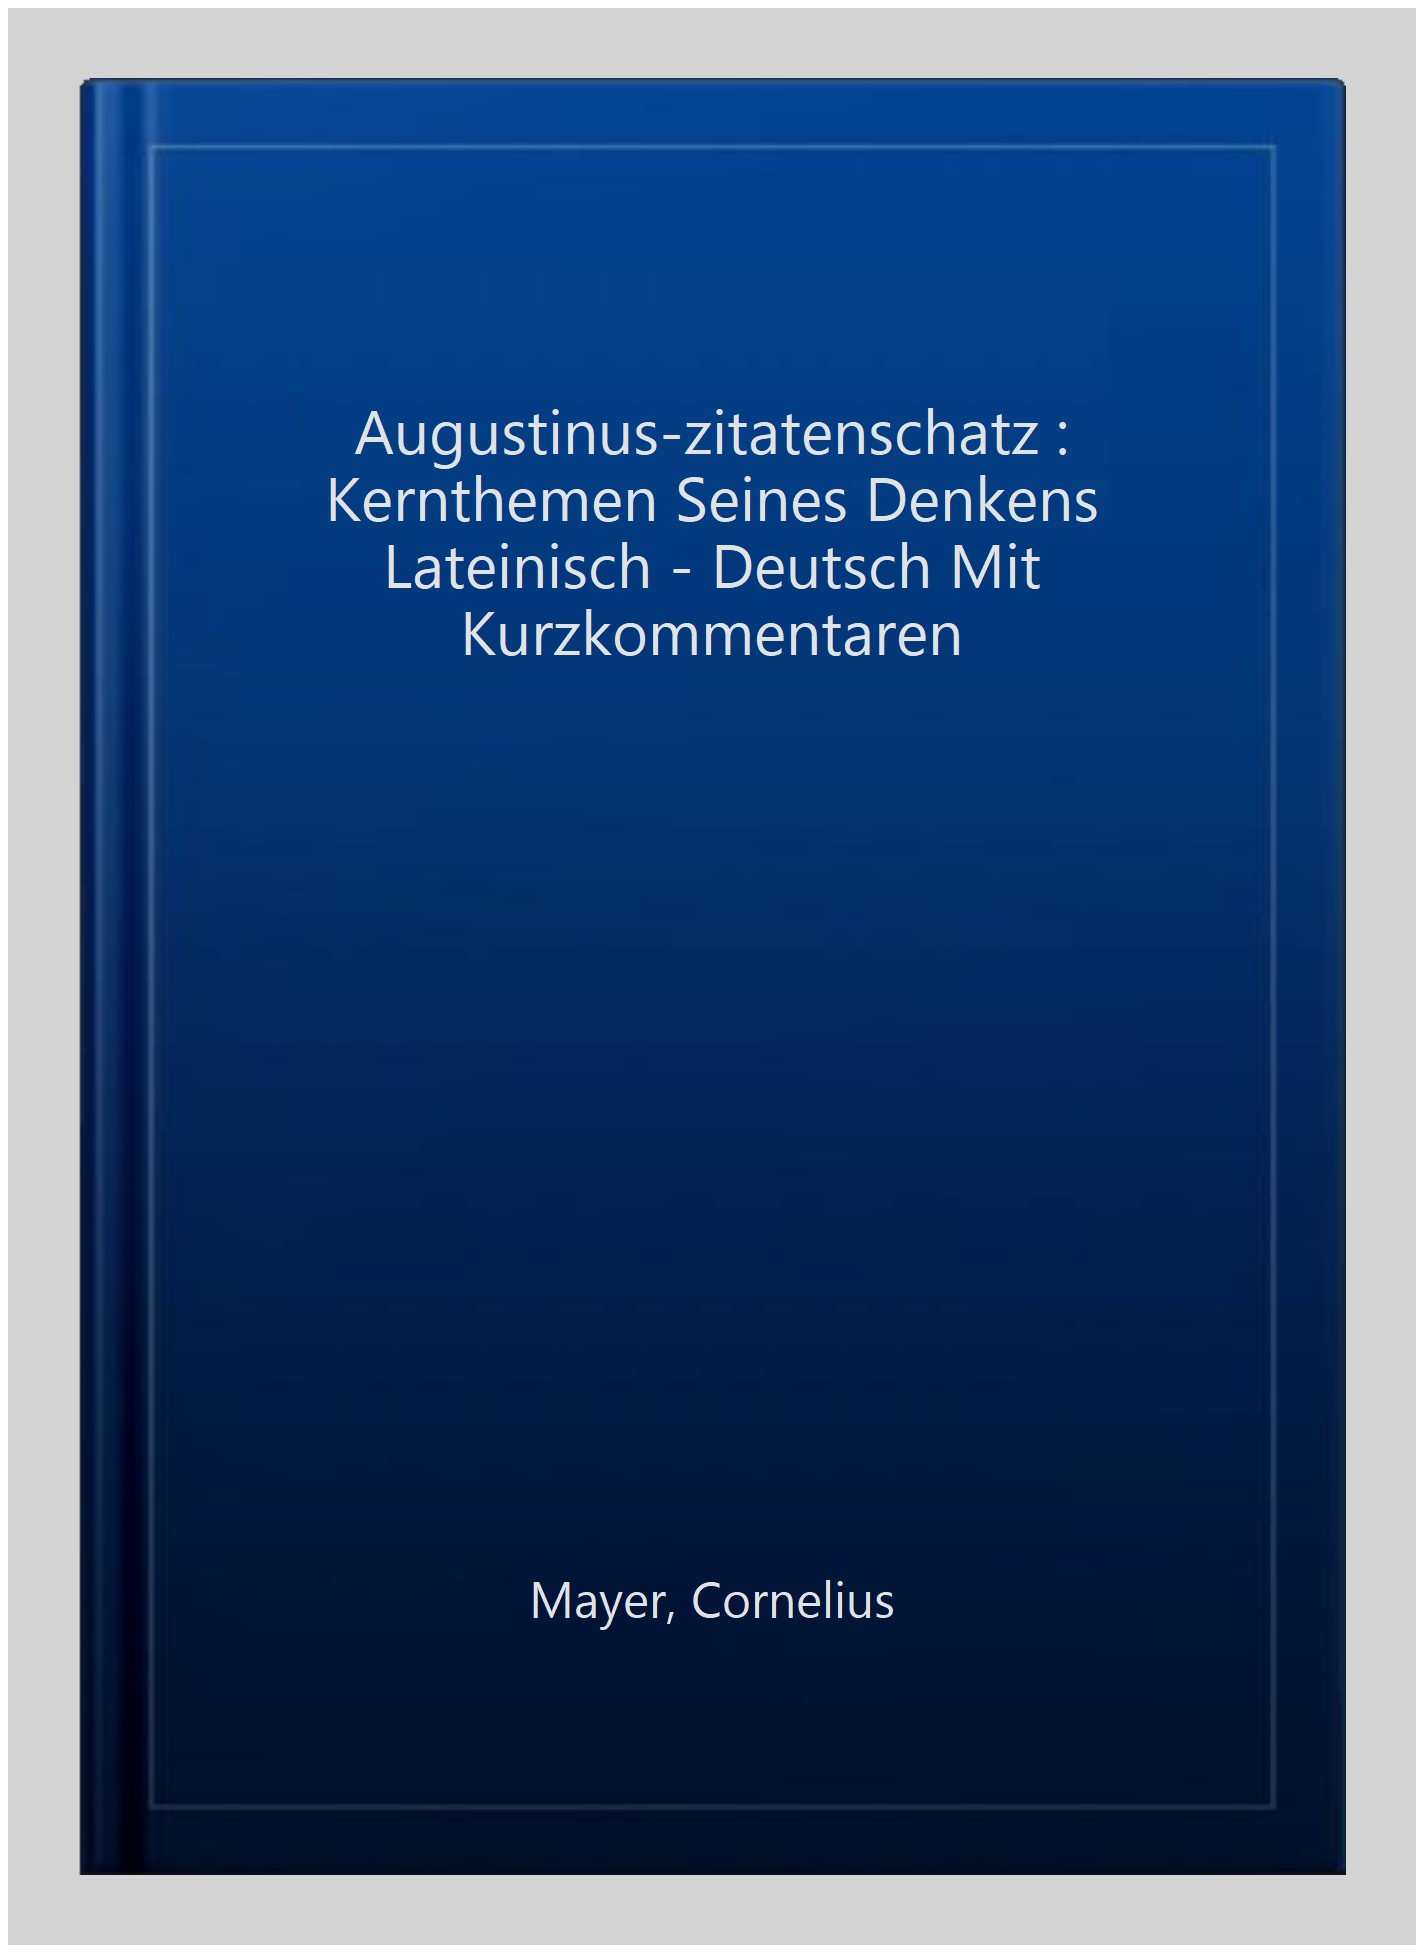 Augustinus-zitatenschatz : Kernthemen Seines Denkens Lateinisch - Deutsch Mit Kurzkommentaren -Language: german - Mayer, Cornelius